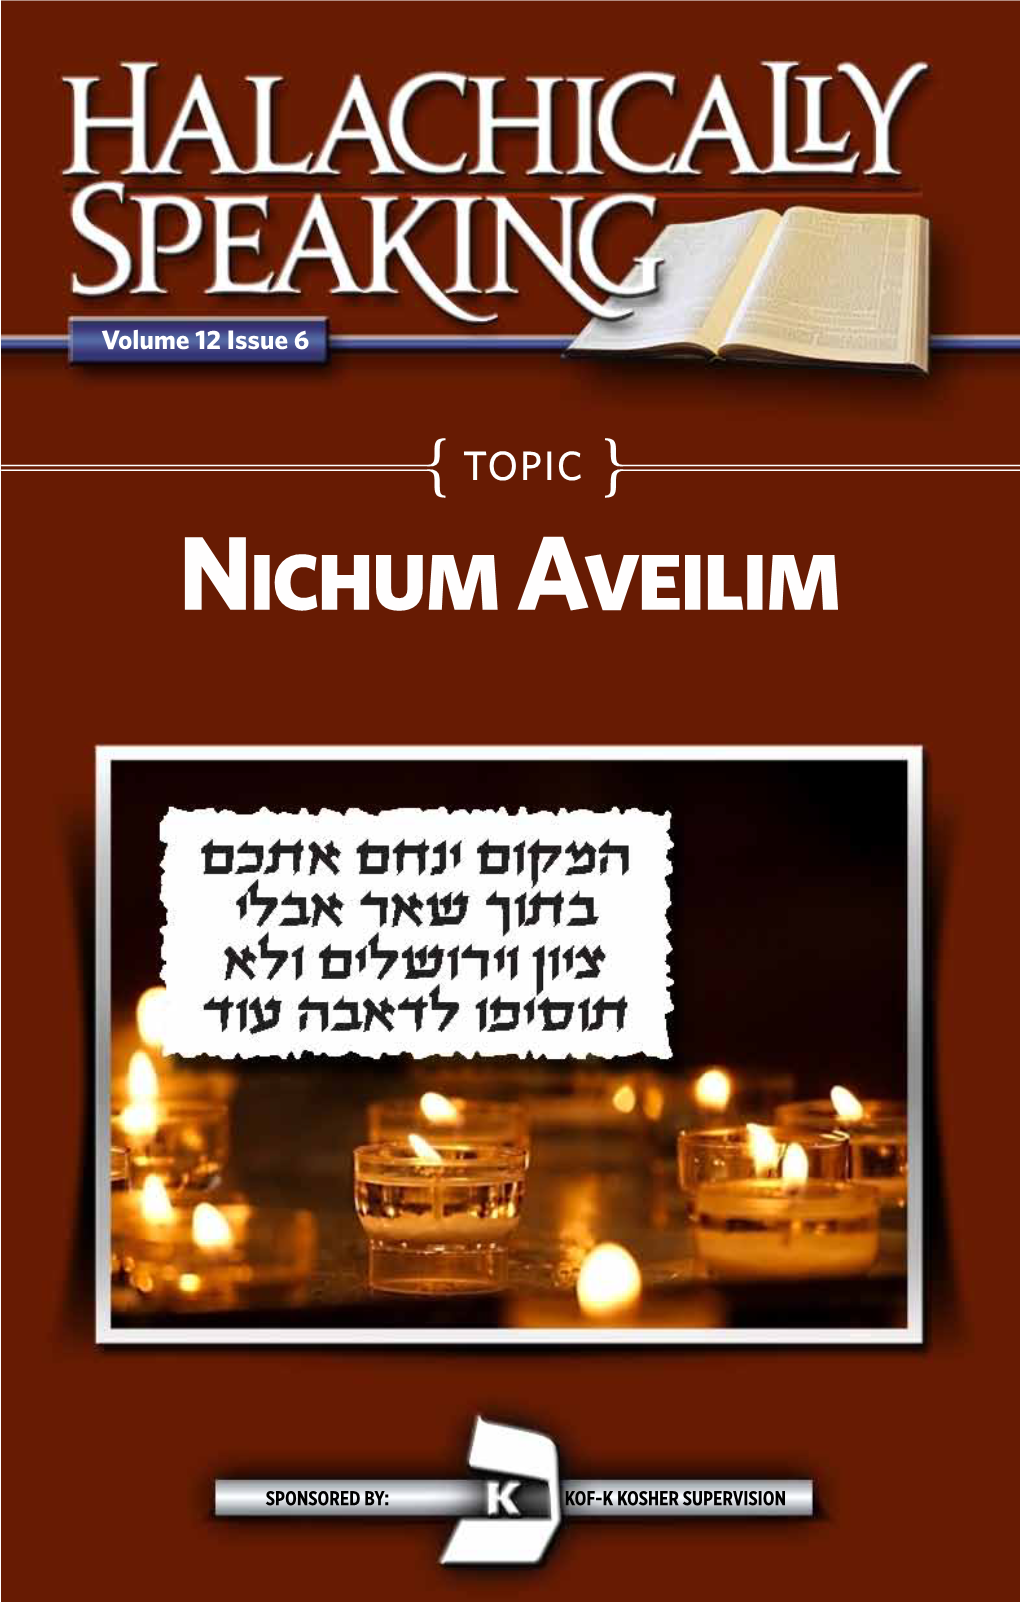 Nichum Aveilim